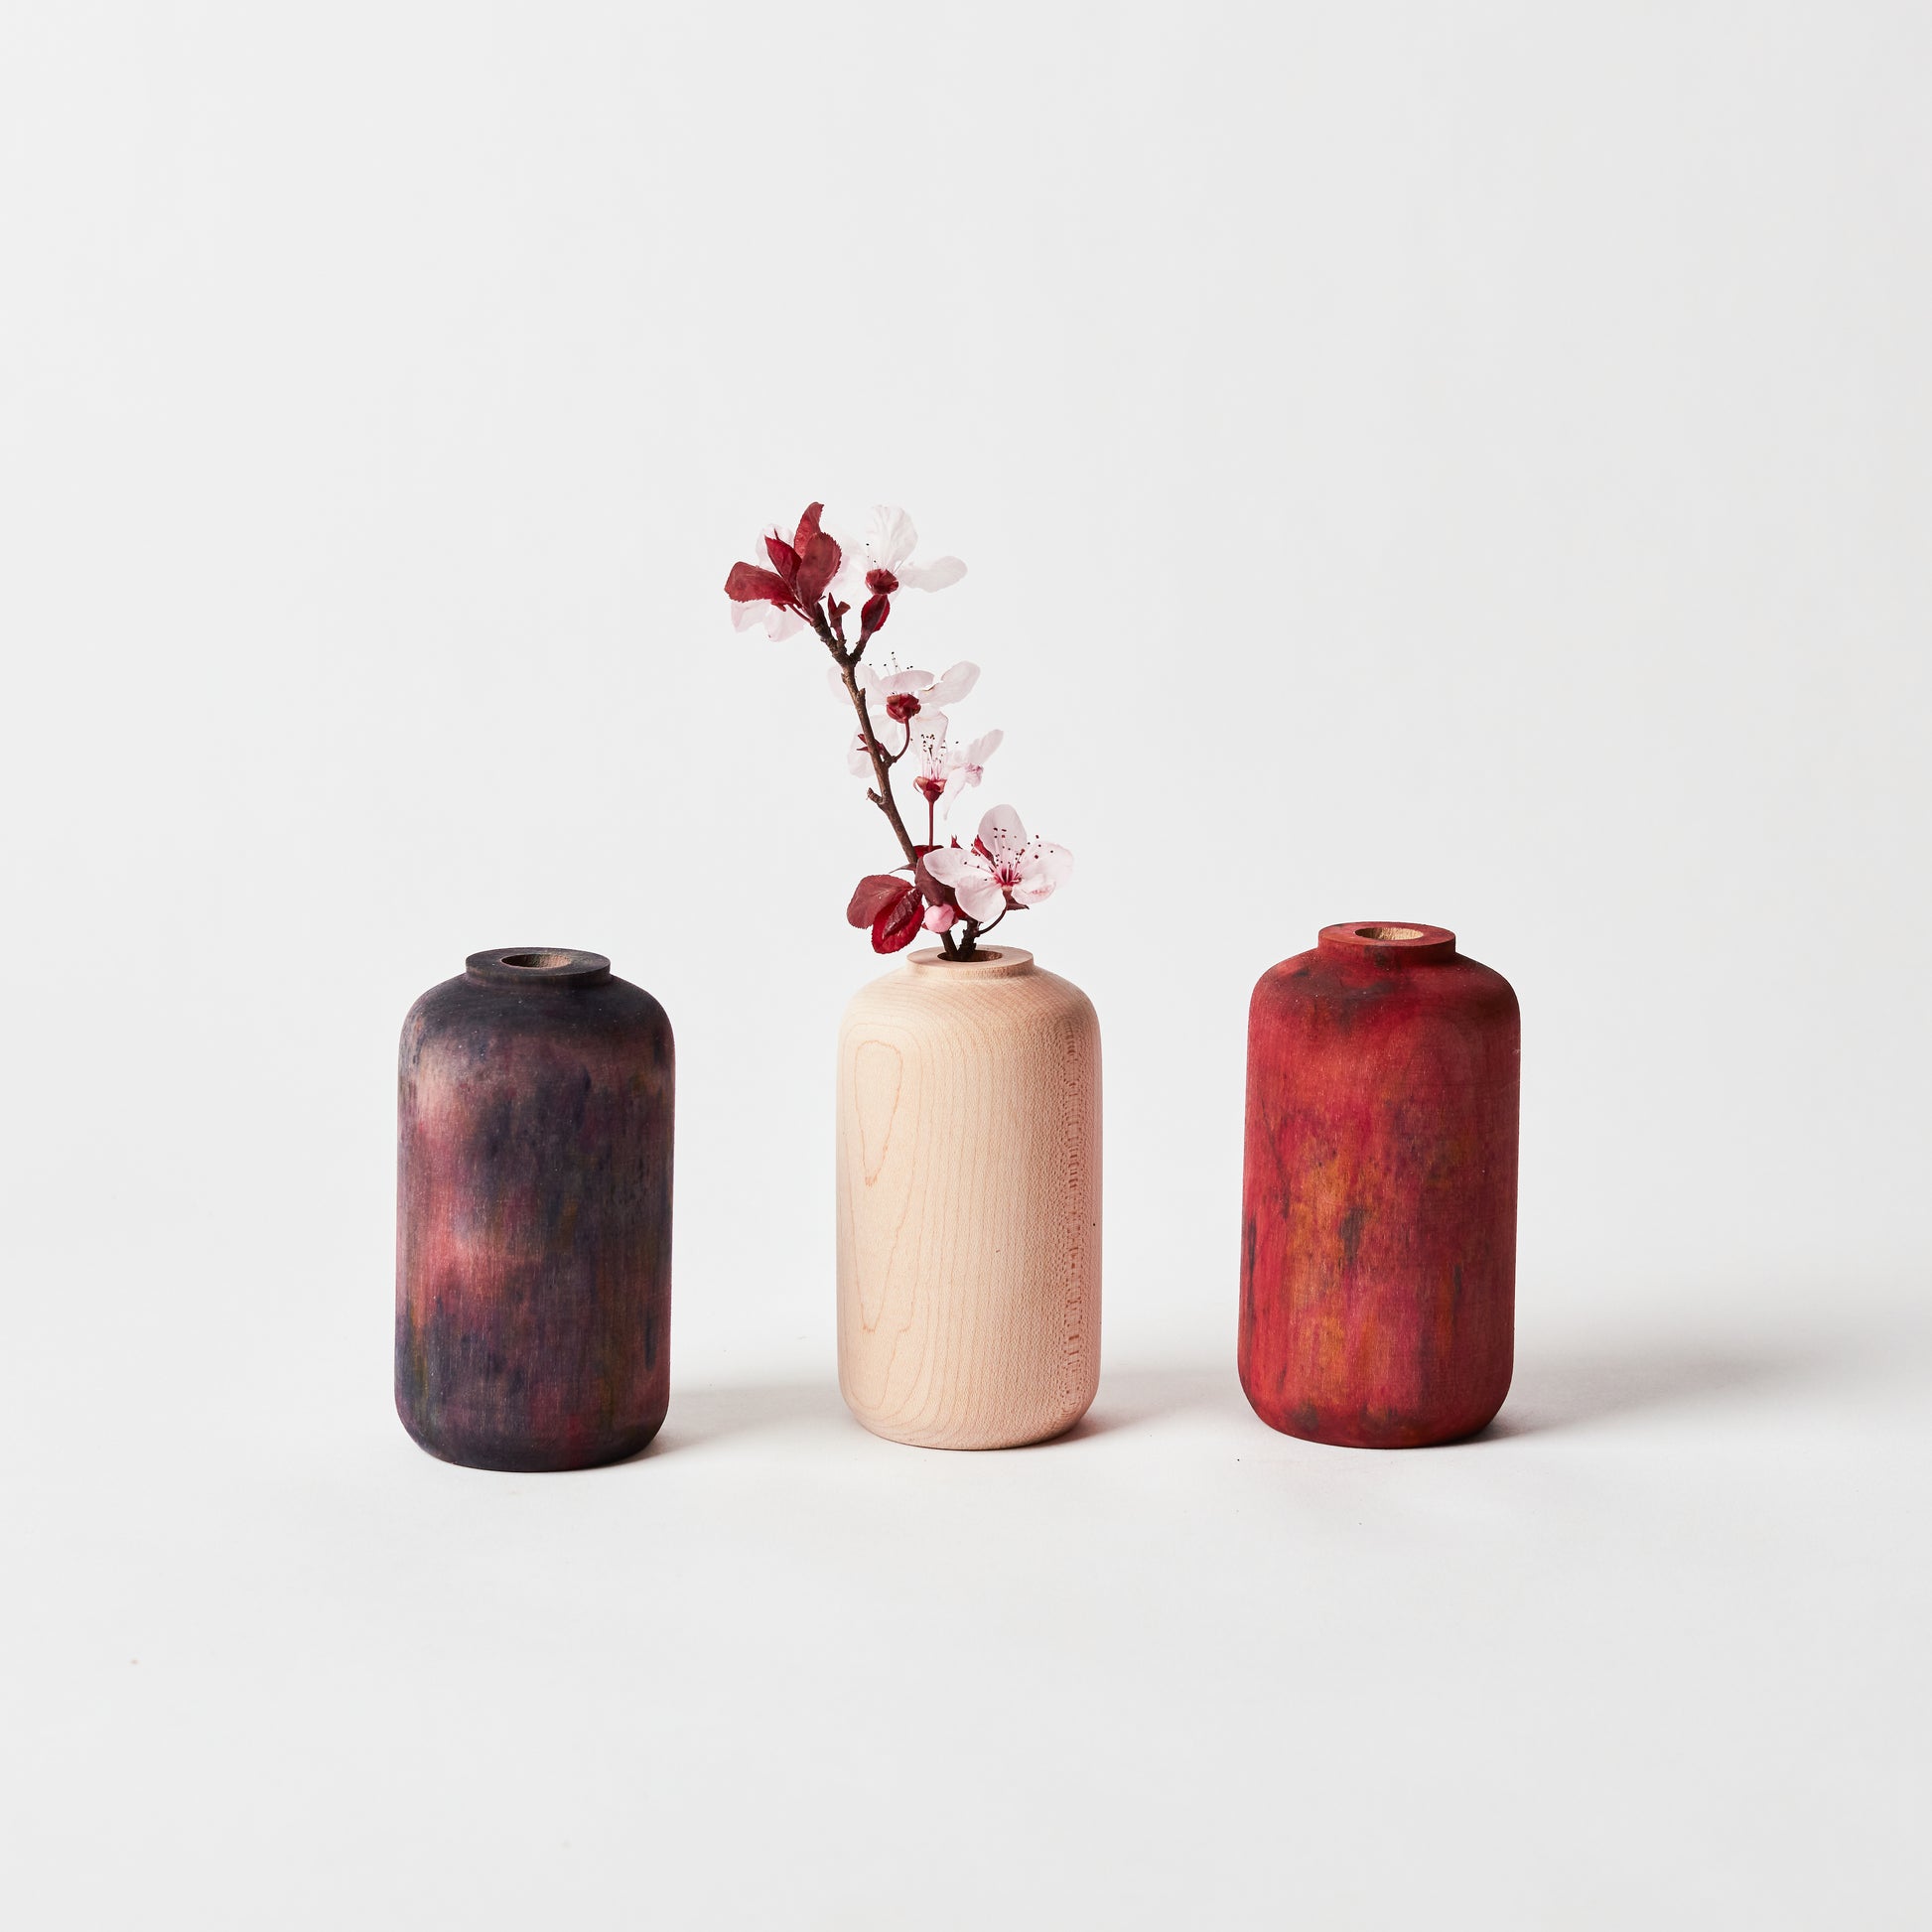 Left to Right: Midnight maple bud vase, undyed maple bud vase holding flowers, crimson maple bud vase.